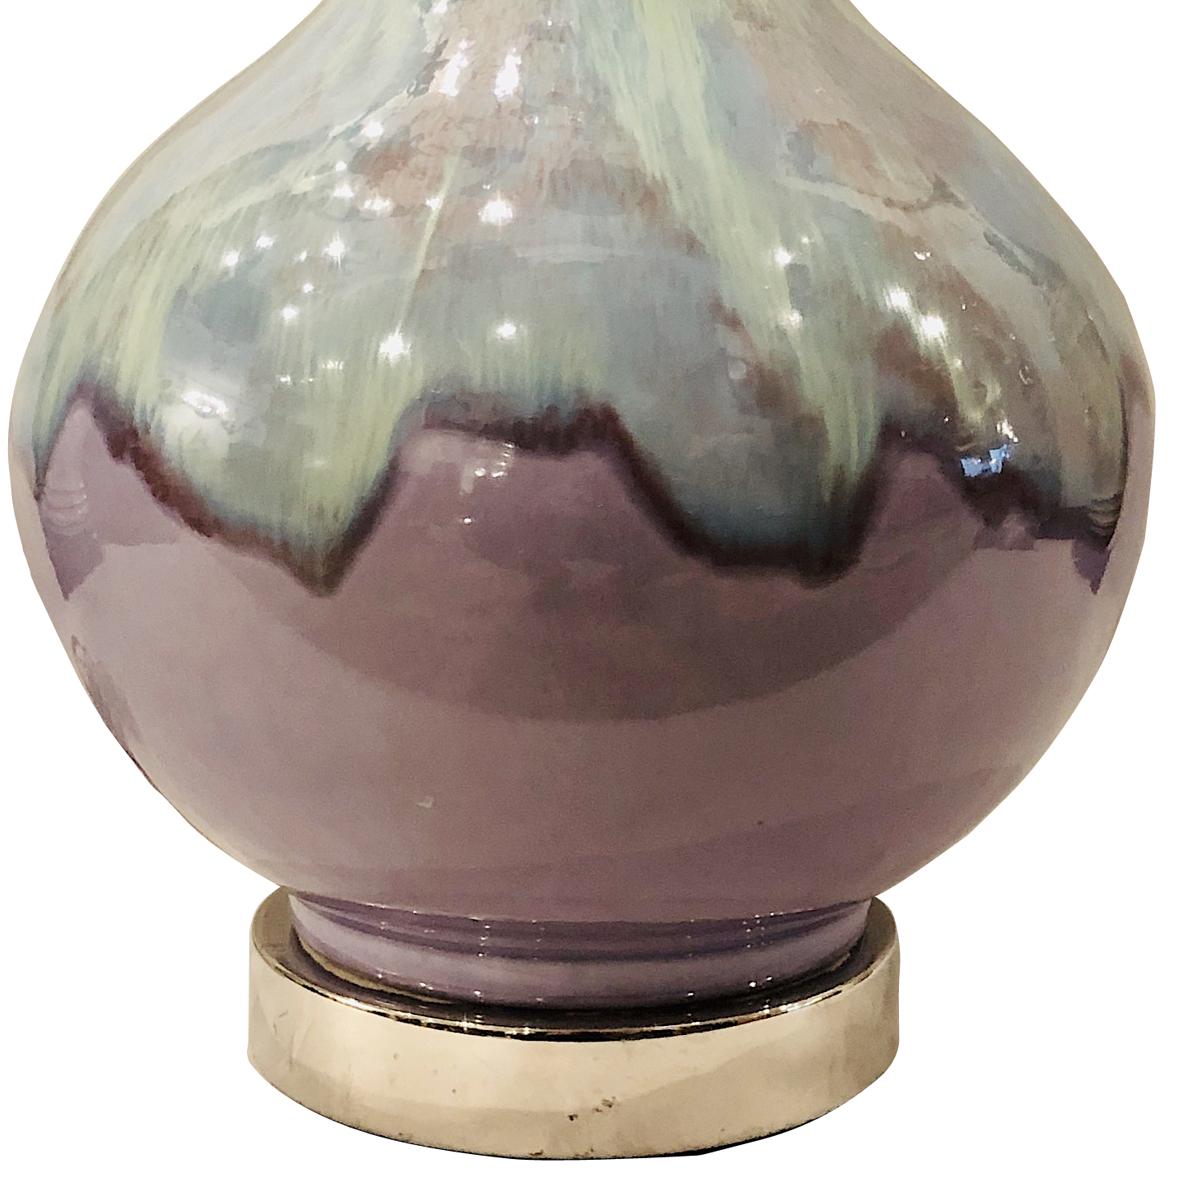 Lampe de table unique en porcelaine émaillée, datant des années 1960, aux teintes turquoise et améthyste, sur une base nickelée.

Mesures :
Hauteur 15